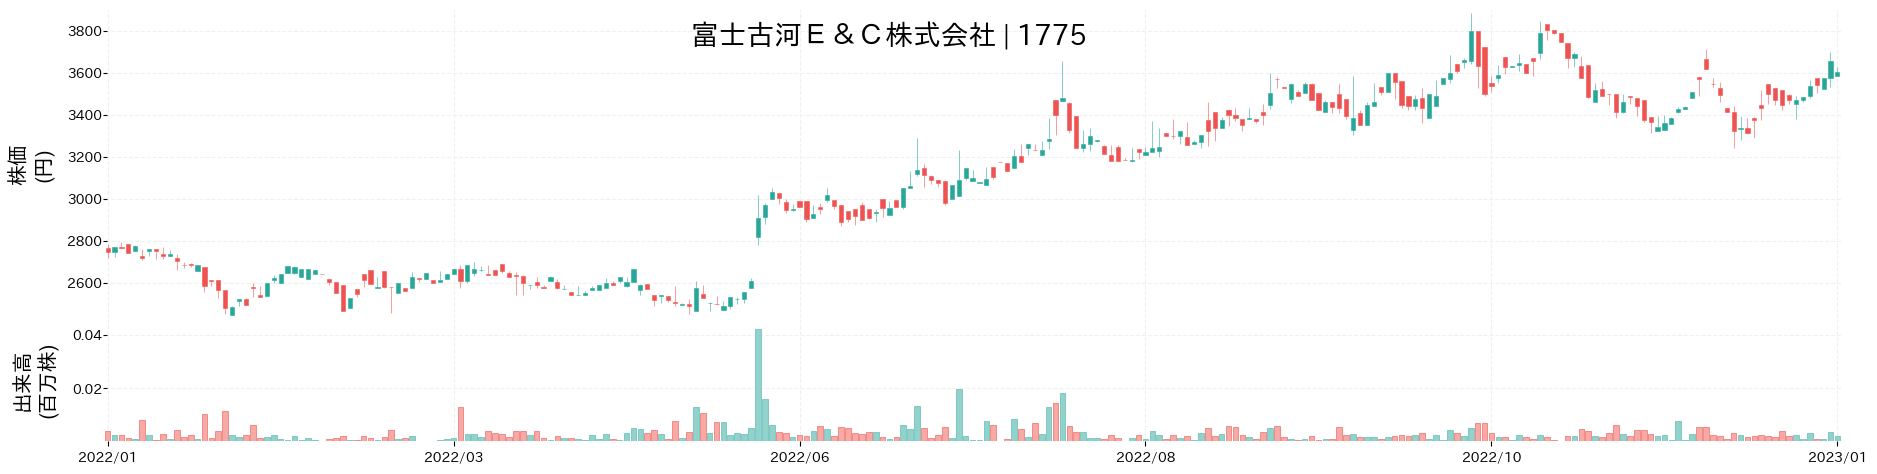 富士古河E&Cの株価推移(2022)